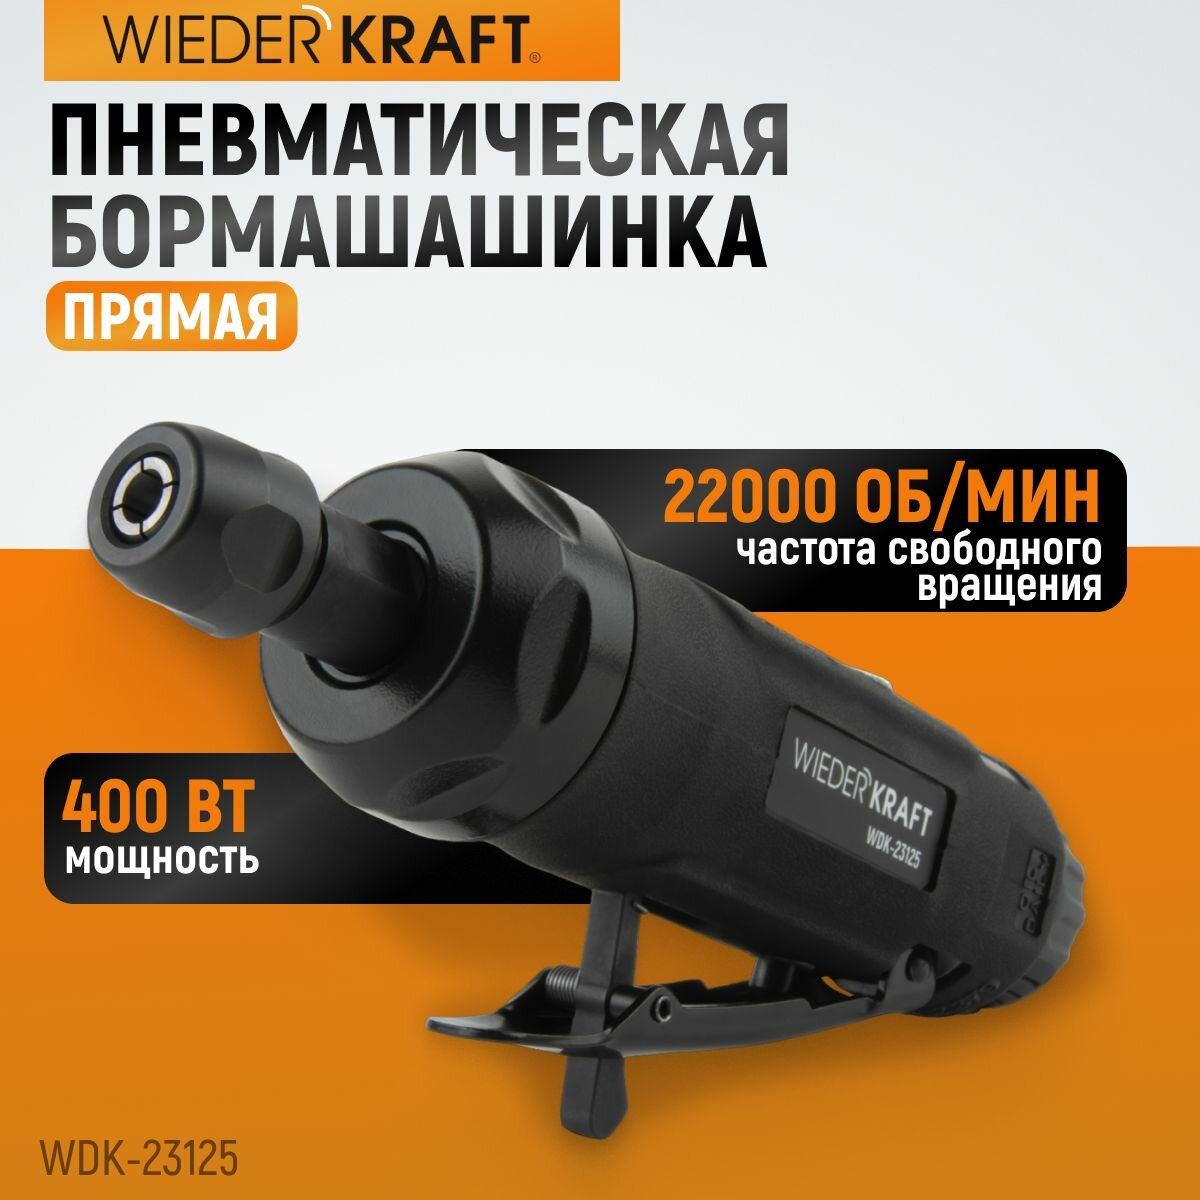 Пневматическая прямая бормашинка 22000 Об/мин 400 Вт WDK-23125